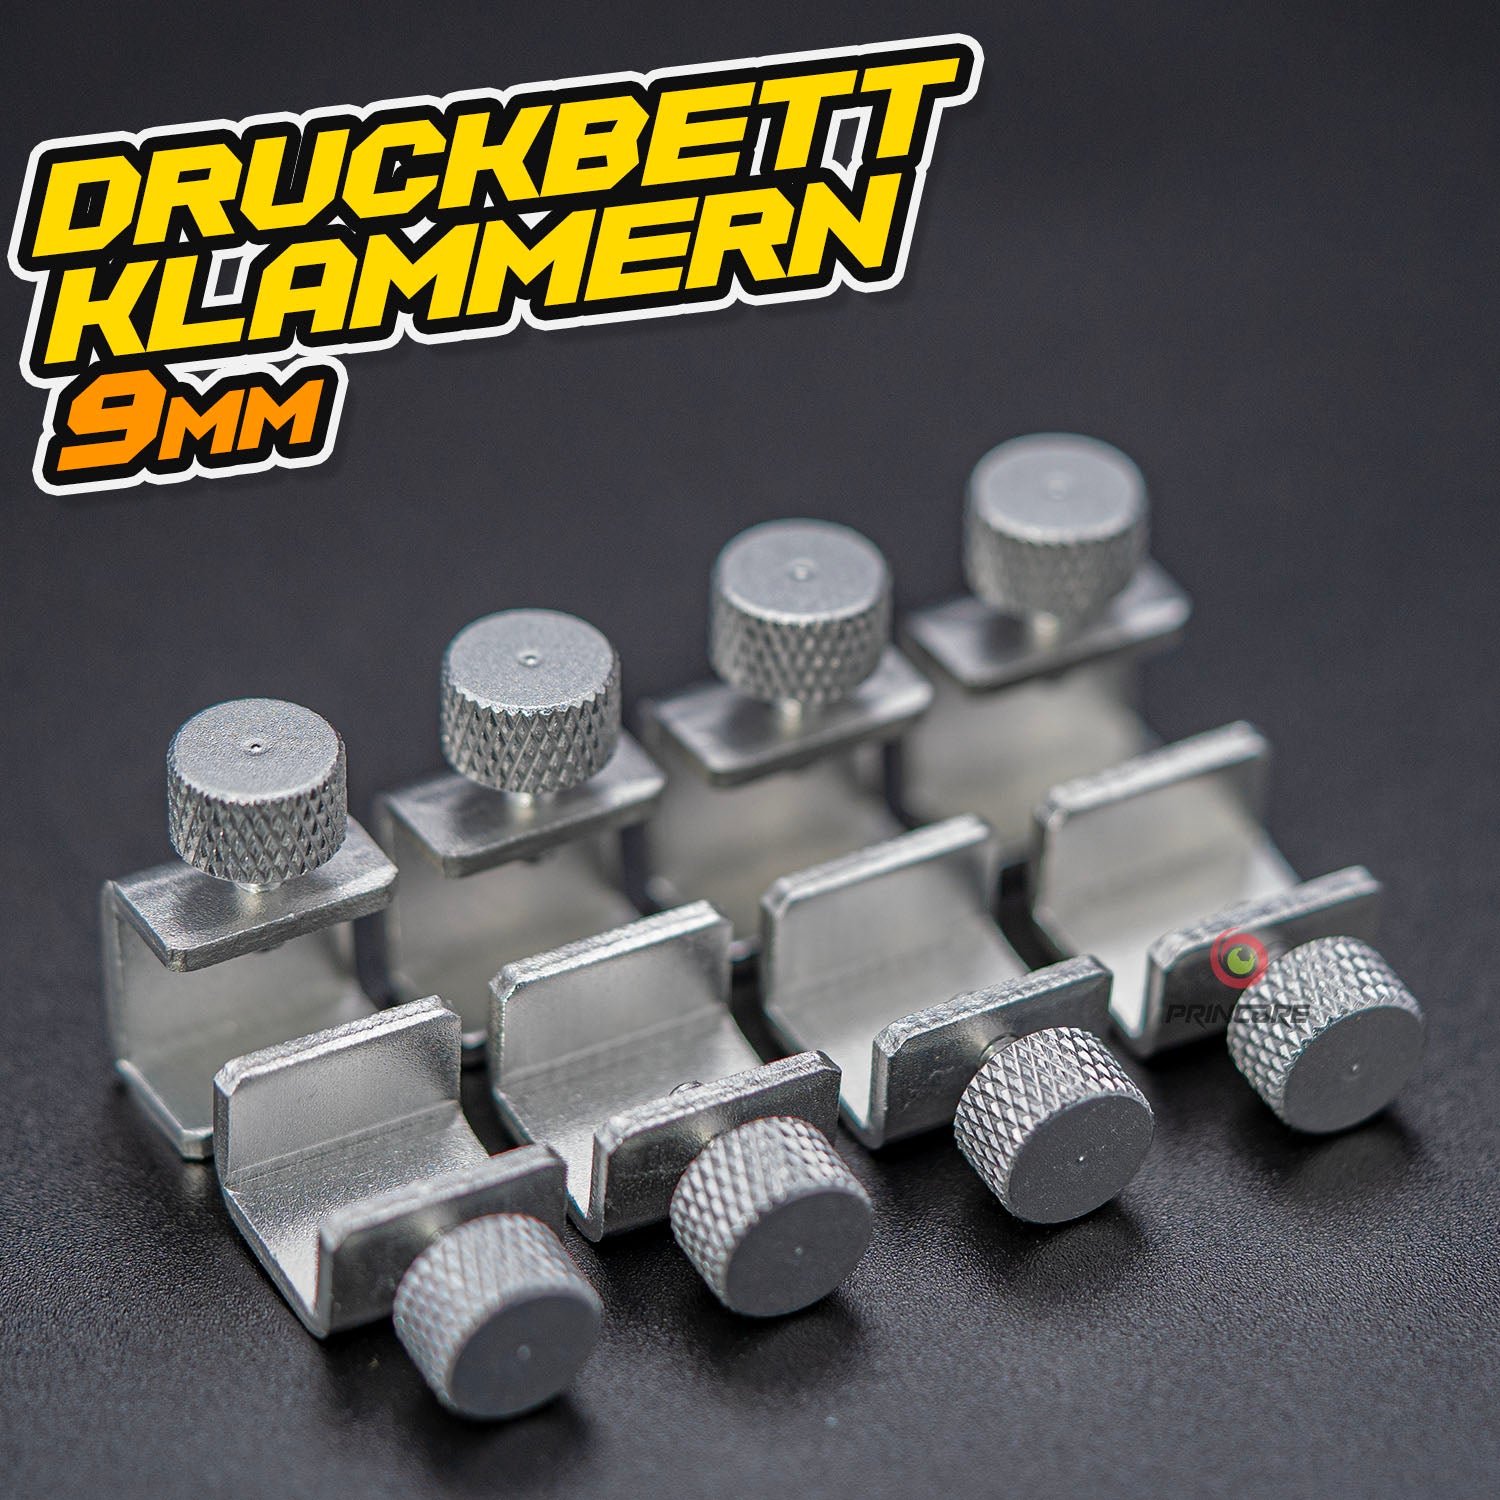 Druckbett Klammern 9mm - Klemmschraube – Princore GmbH